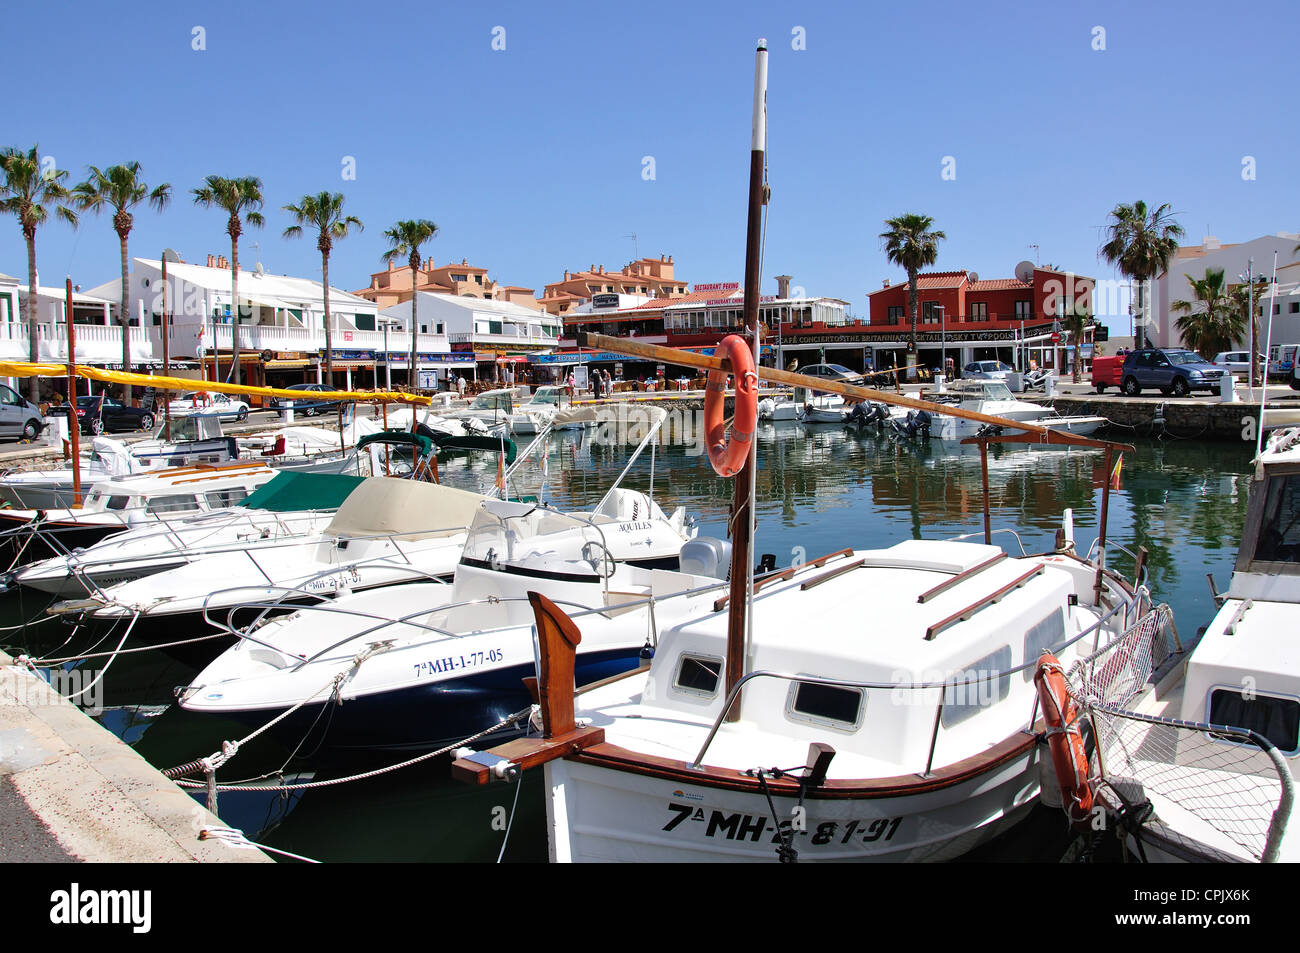 Il Marina di Cala en Bosc, Menorca, isole Baleari, Spagna Foto Stock